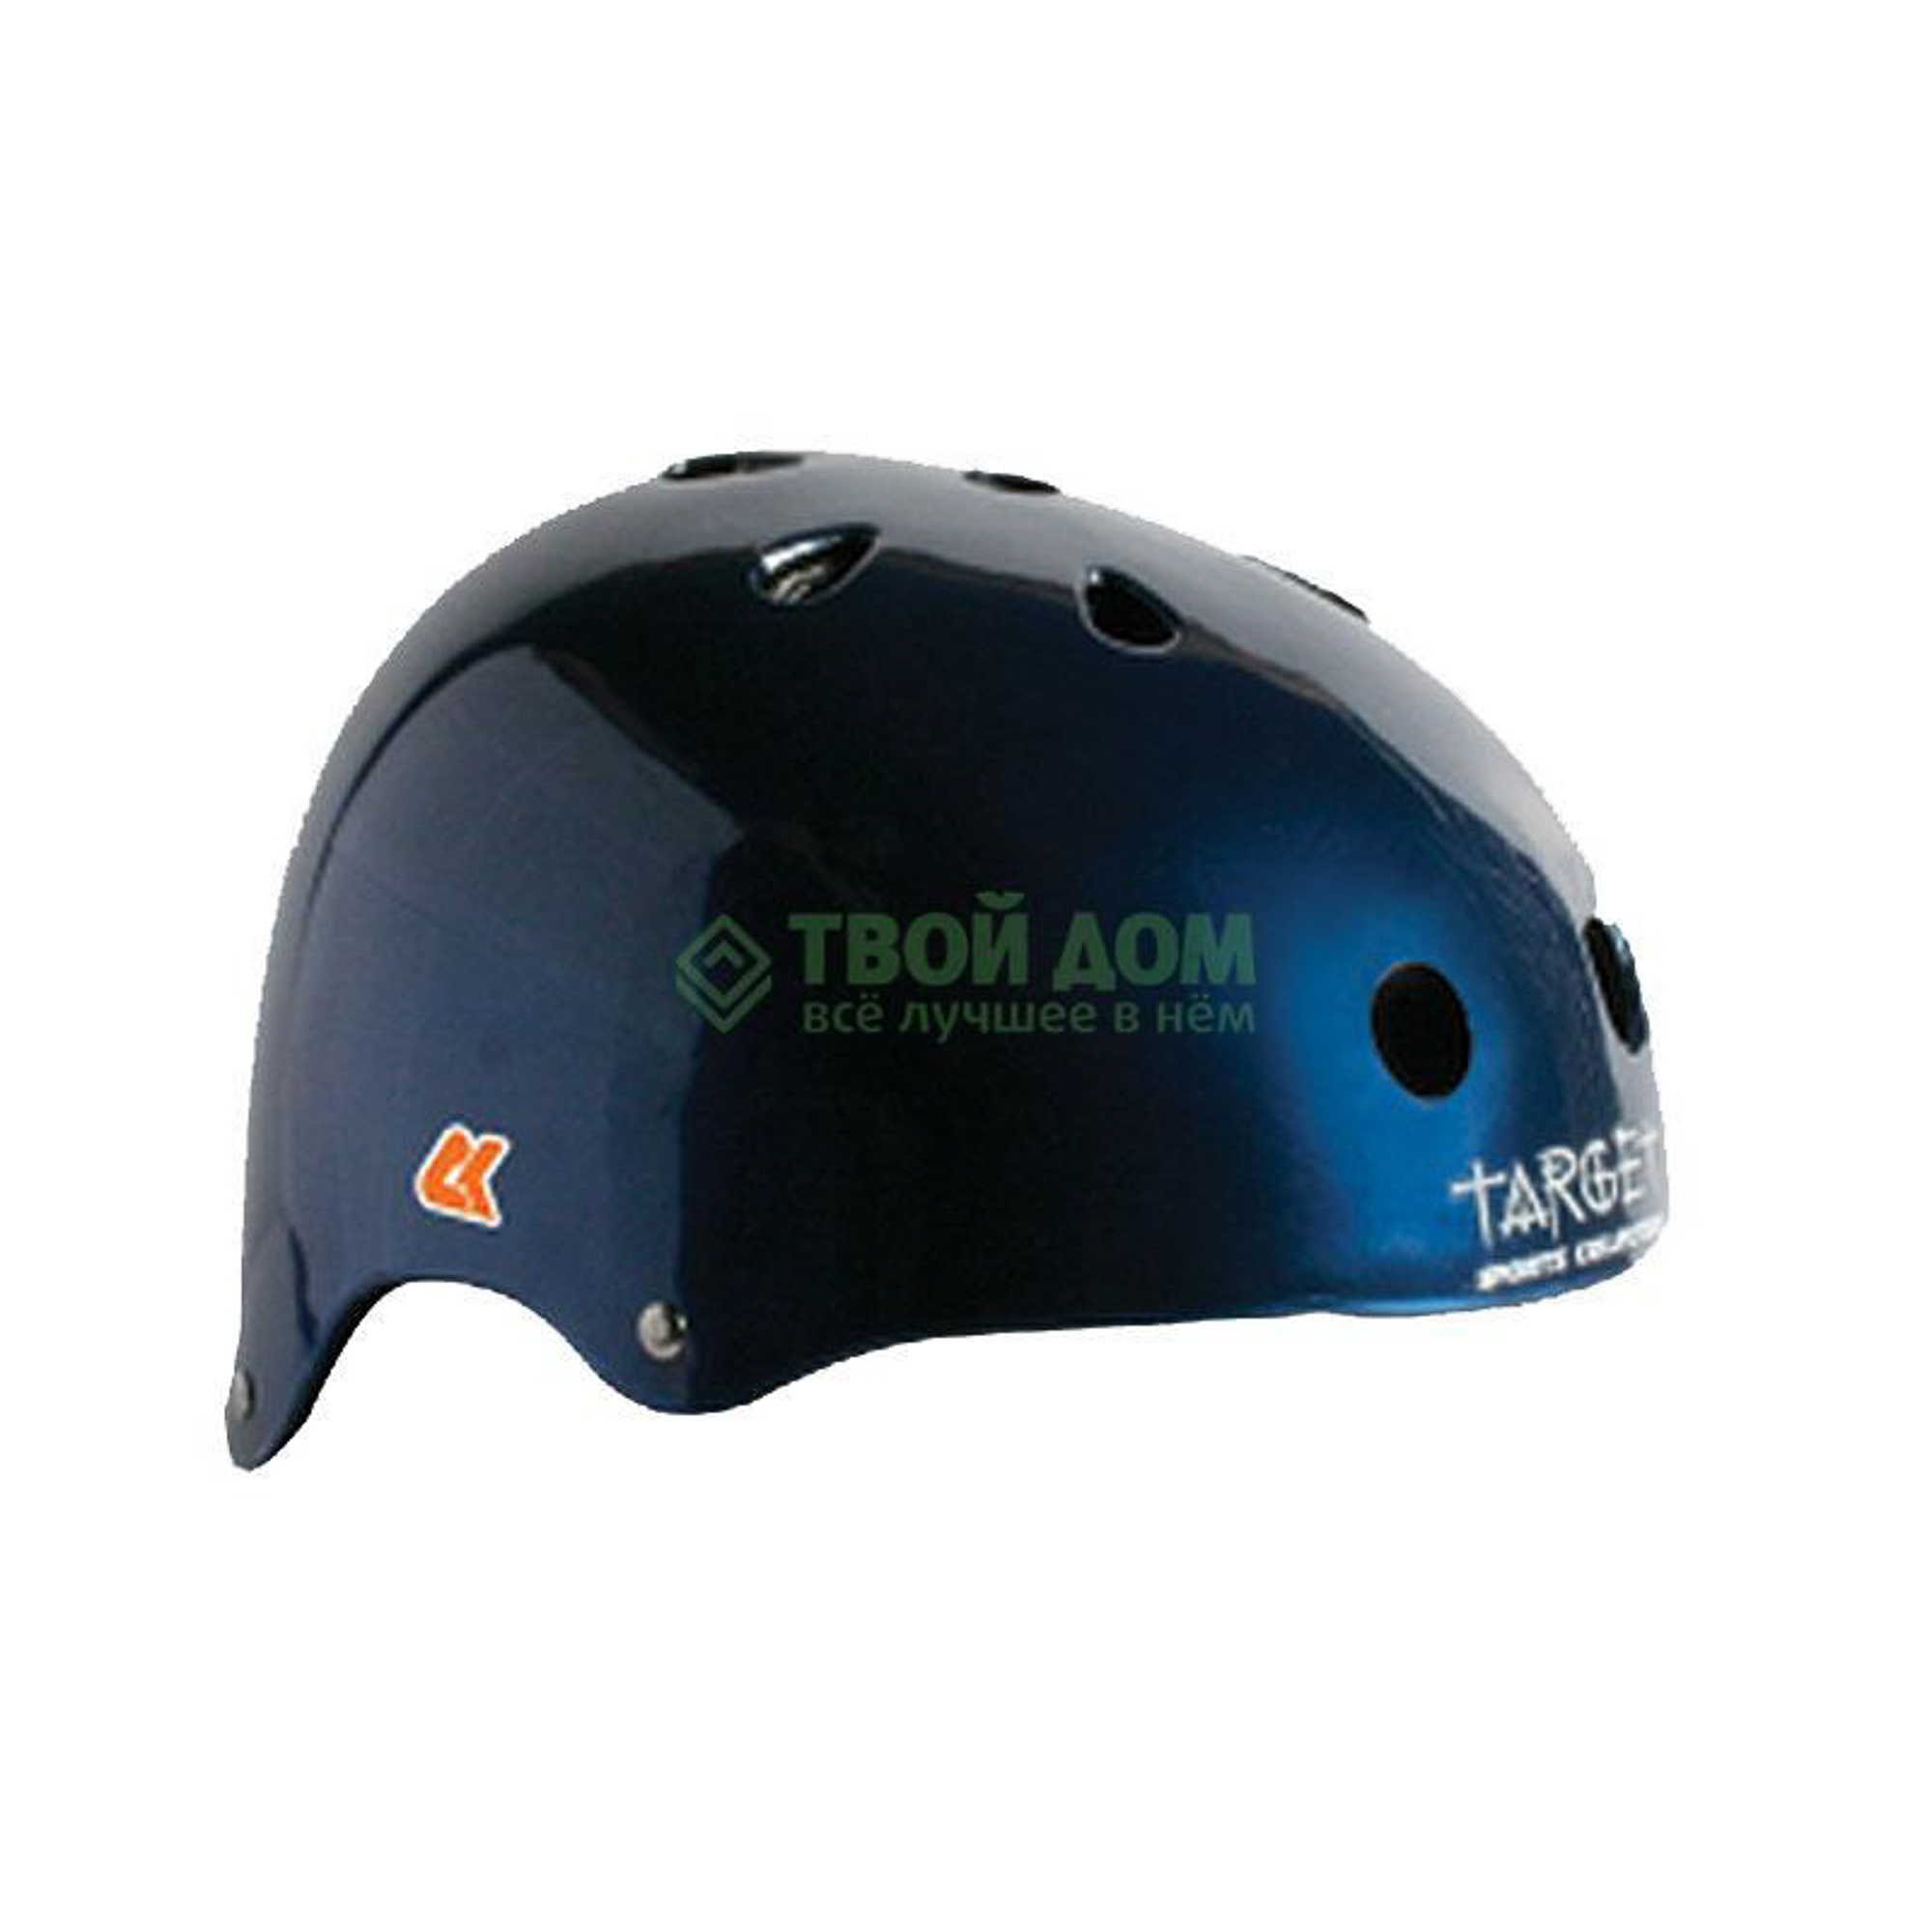 Сk Шлем gloss/metallic blue, цвет синий, размер xl